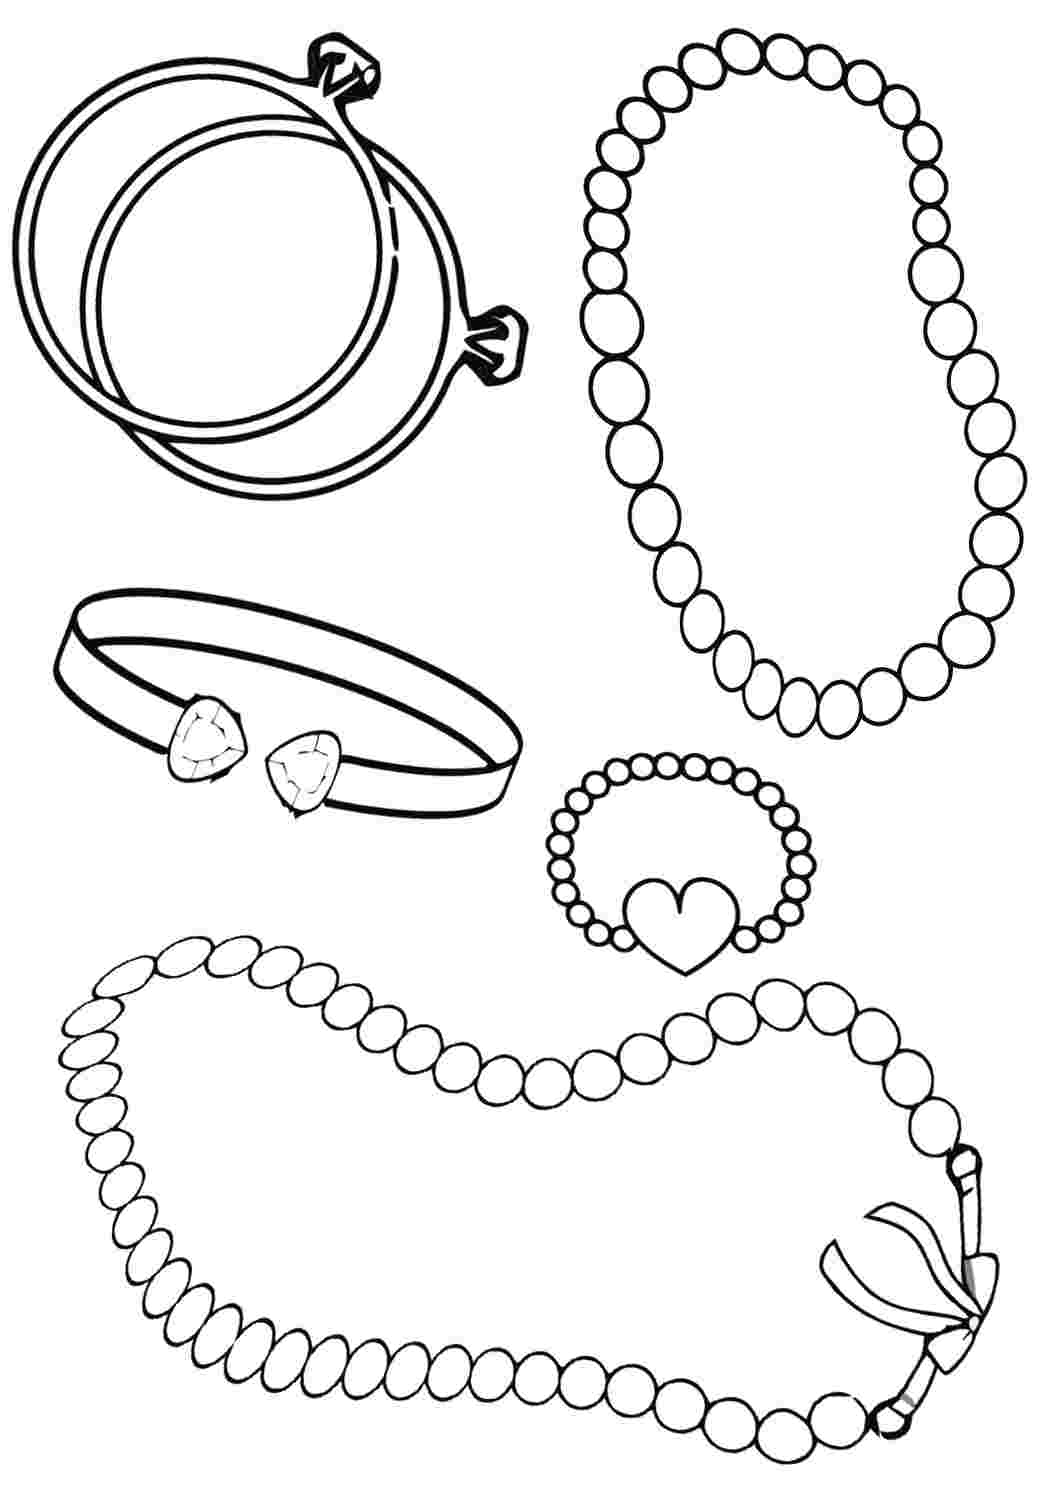 Украшения кольца и браслеты - Одежда и украшения - Раскраски антистресс